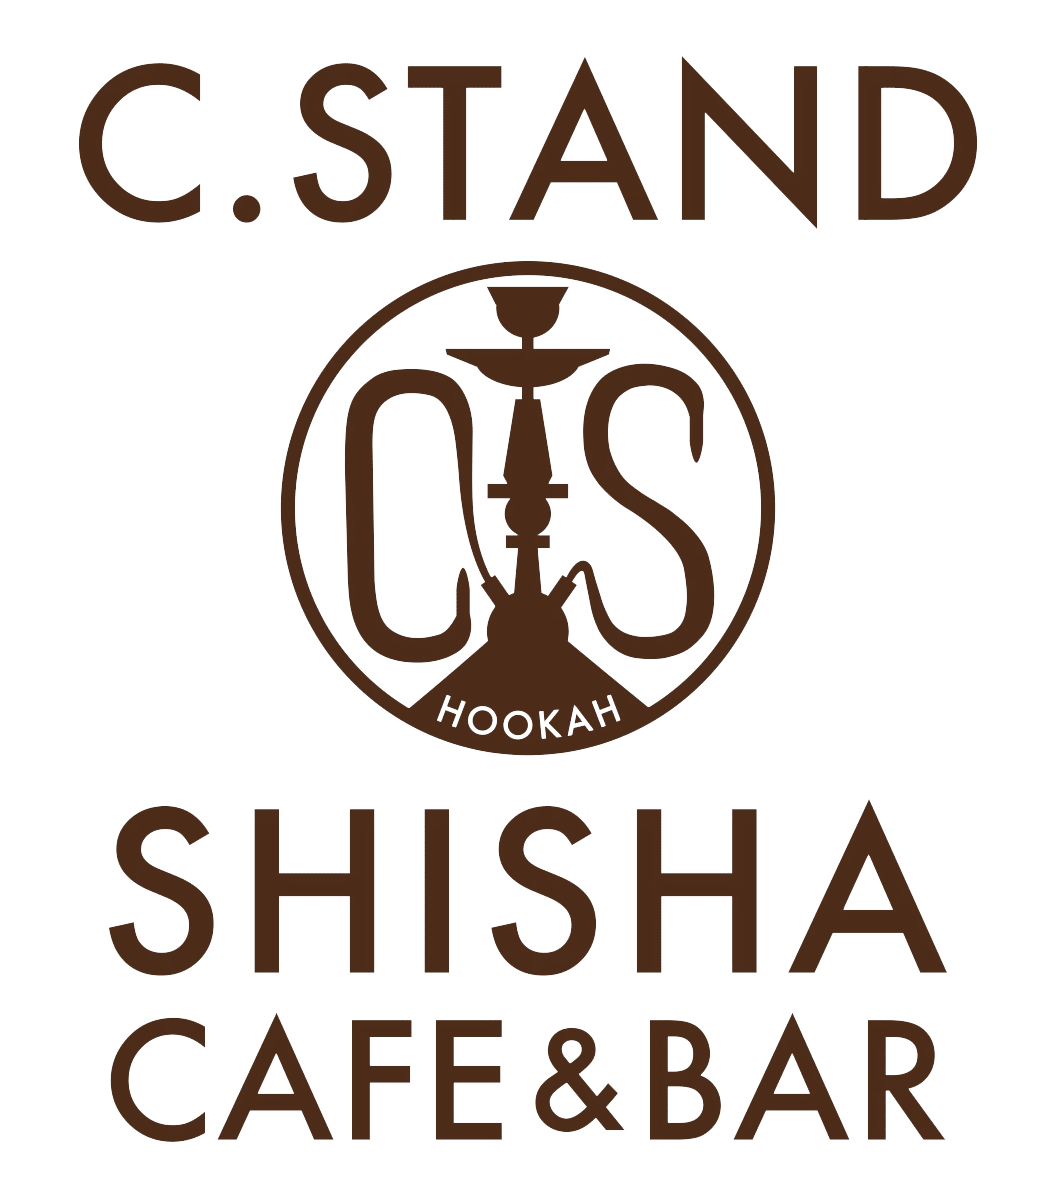 مقهى وبار الشيشة C.STAND مخرج يوكوهاما الغربي